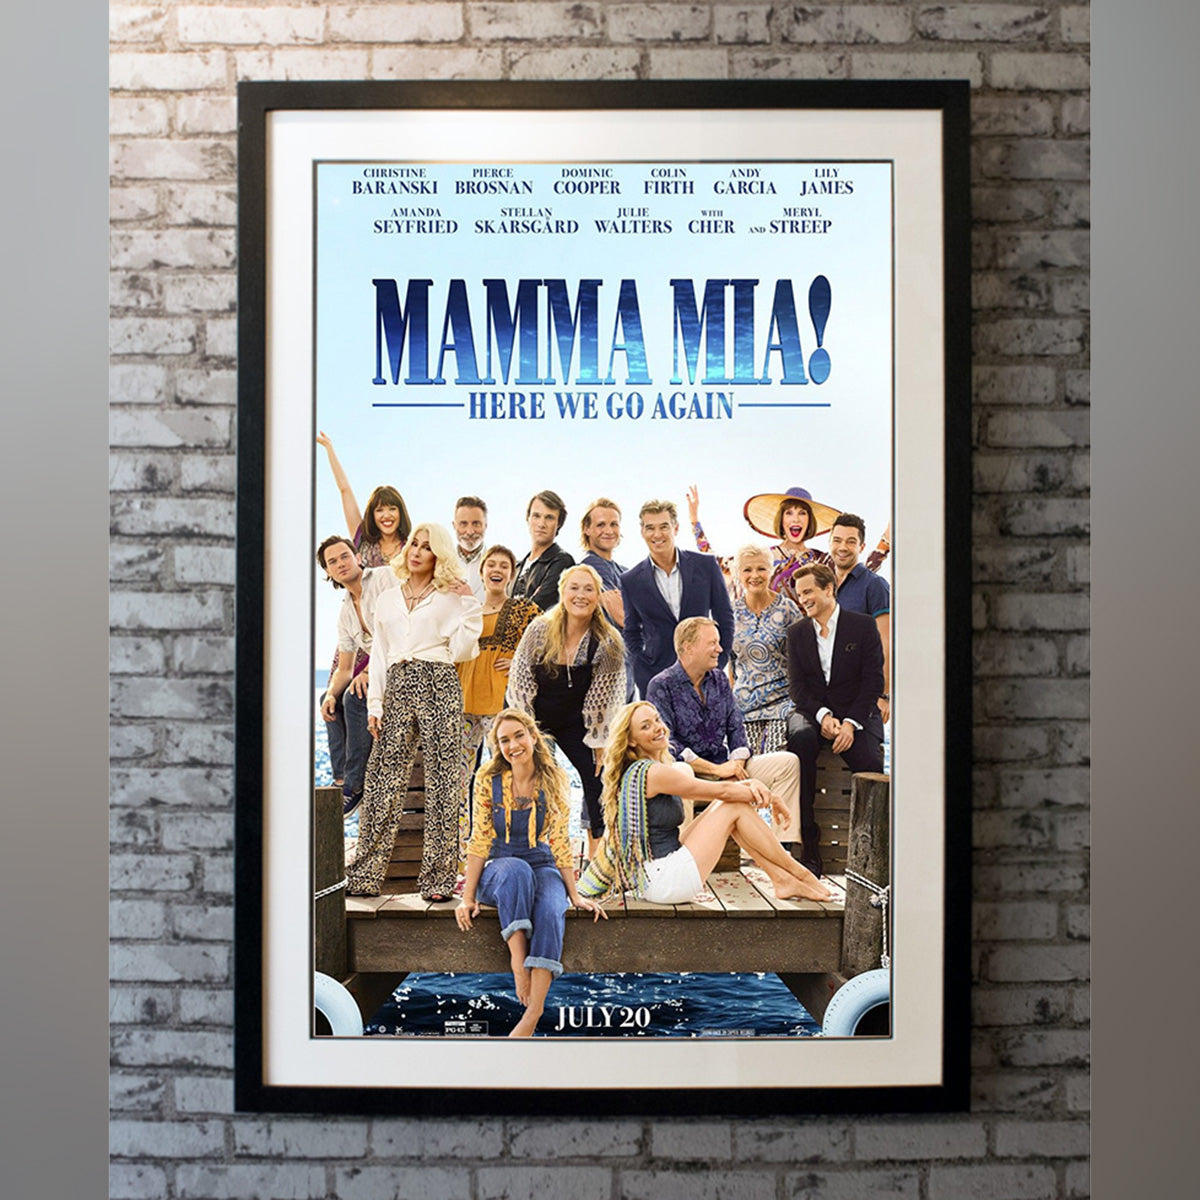 Original Movie Poster of Mamma Mia! Here We Go Again (2018)